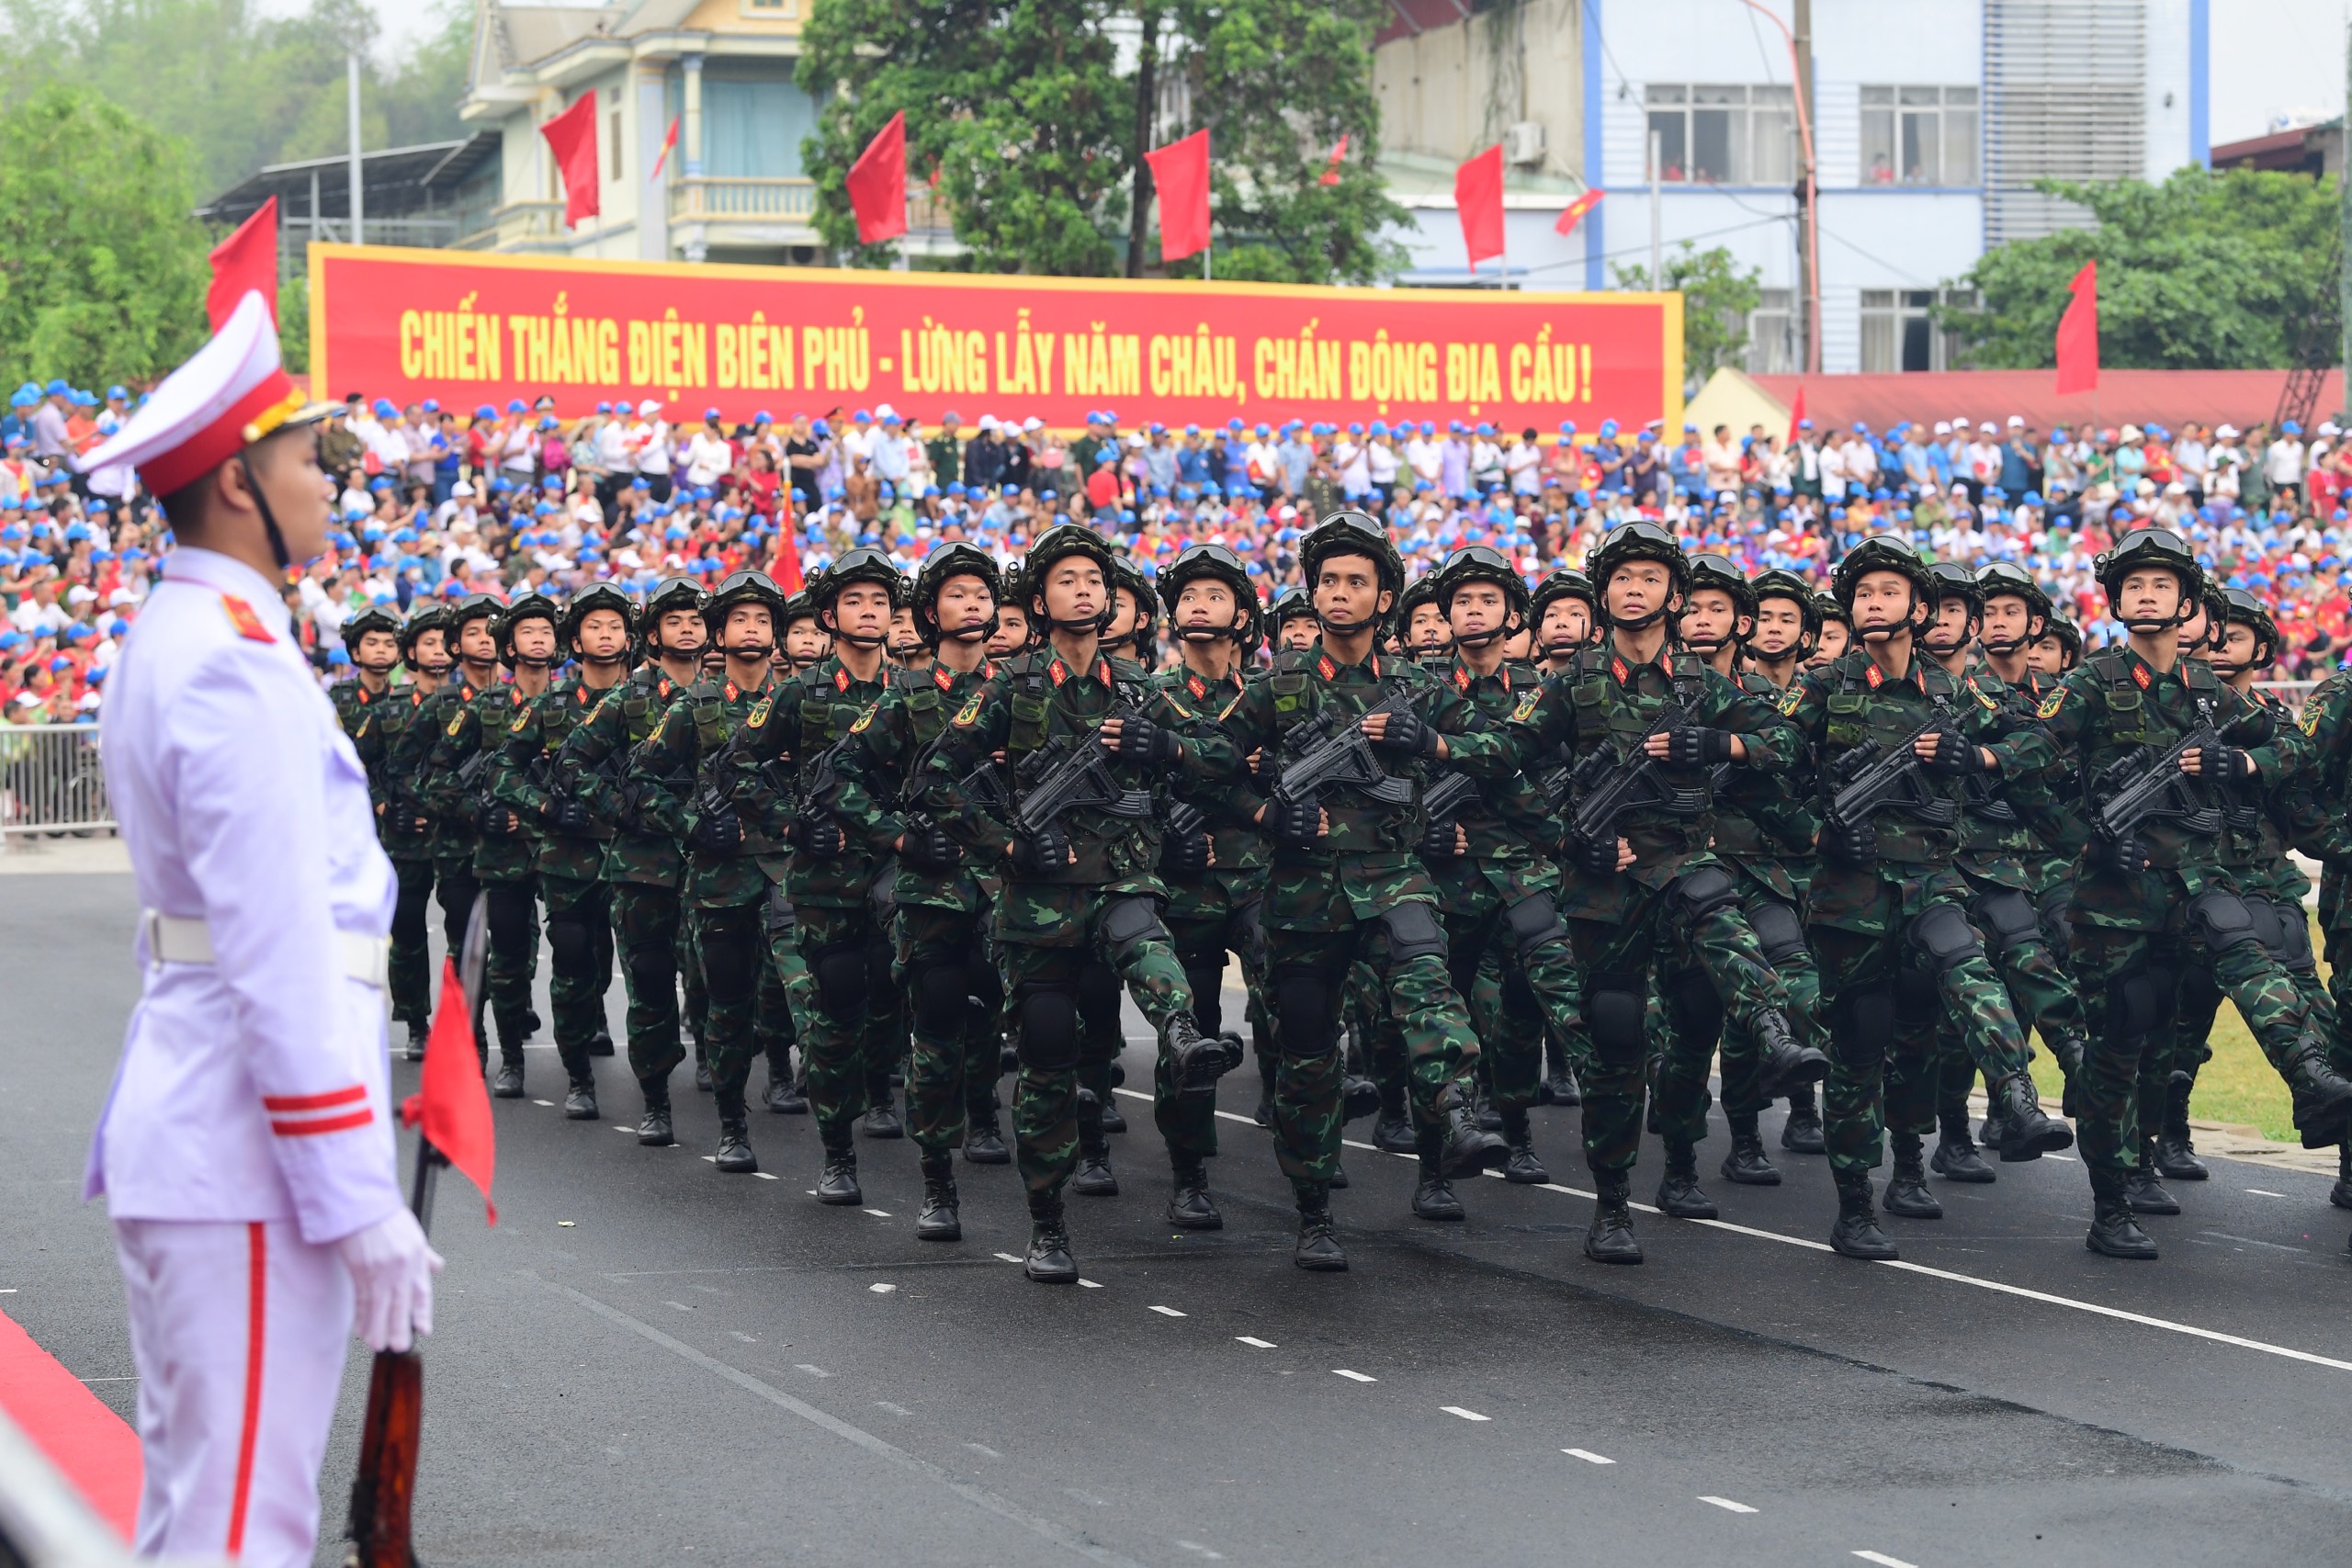 Lễ diễu binh oai hùng và đầy tự hào của 12.000 người - những hình ảnh đi vào lịch sử ở Điện Biên Phủ- Ảnh 12.